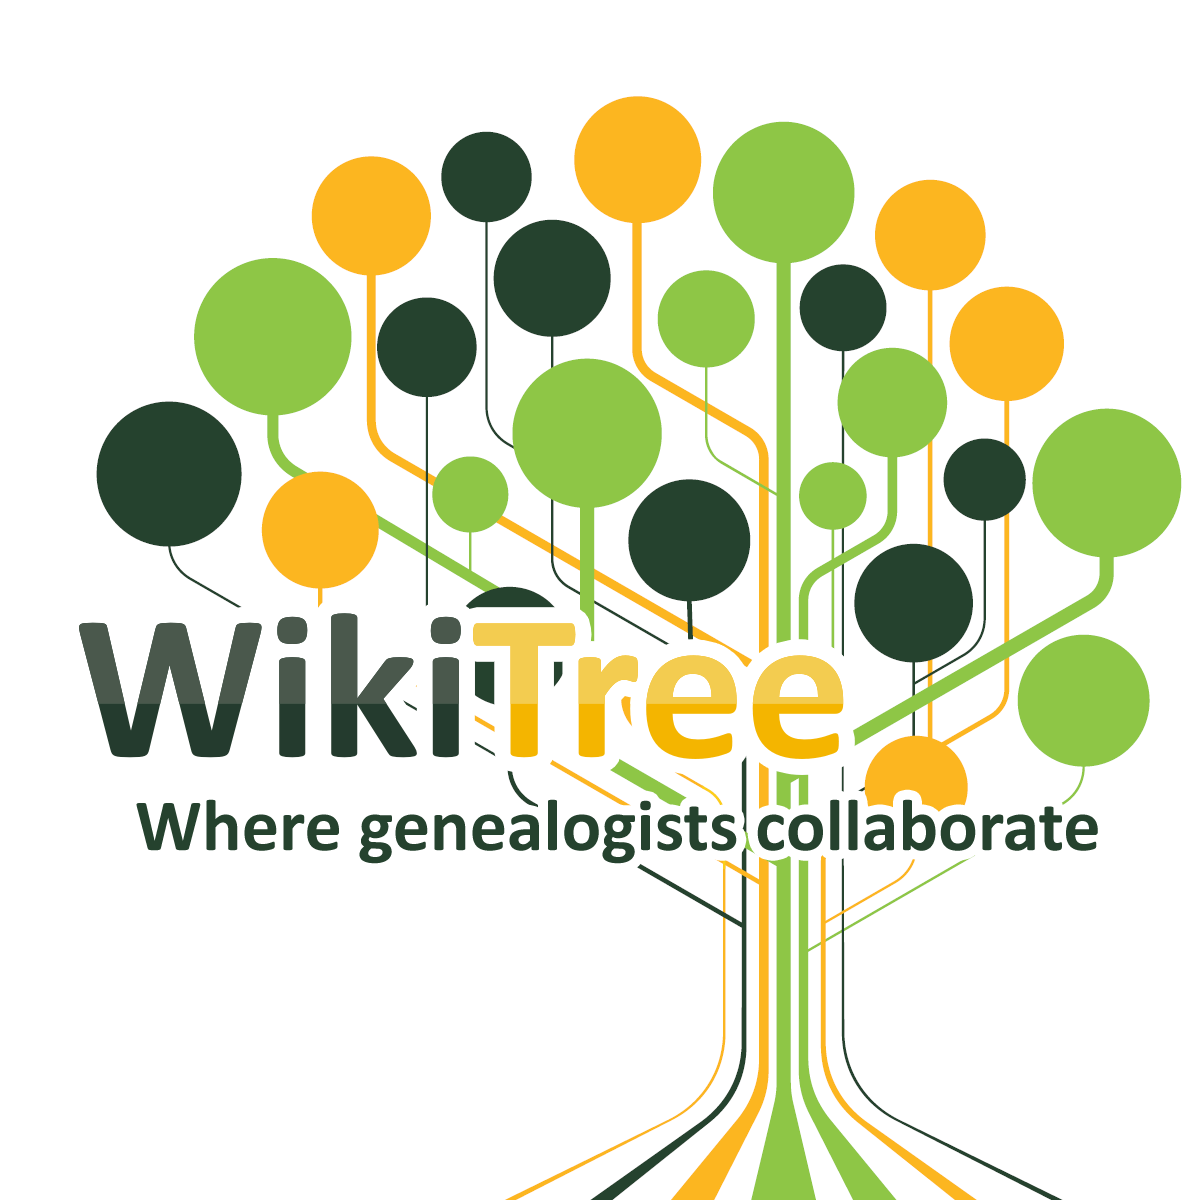 www.wikitree.com